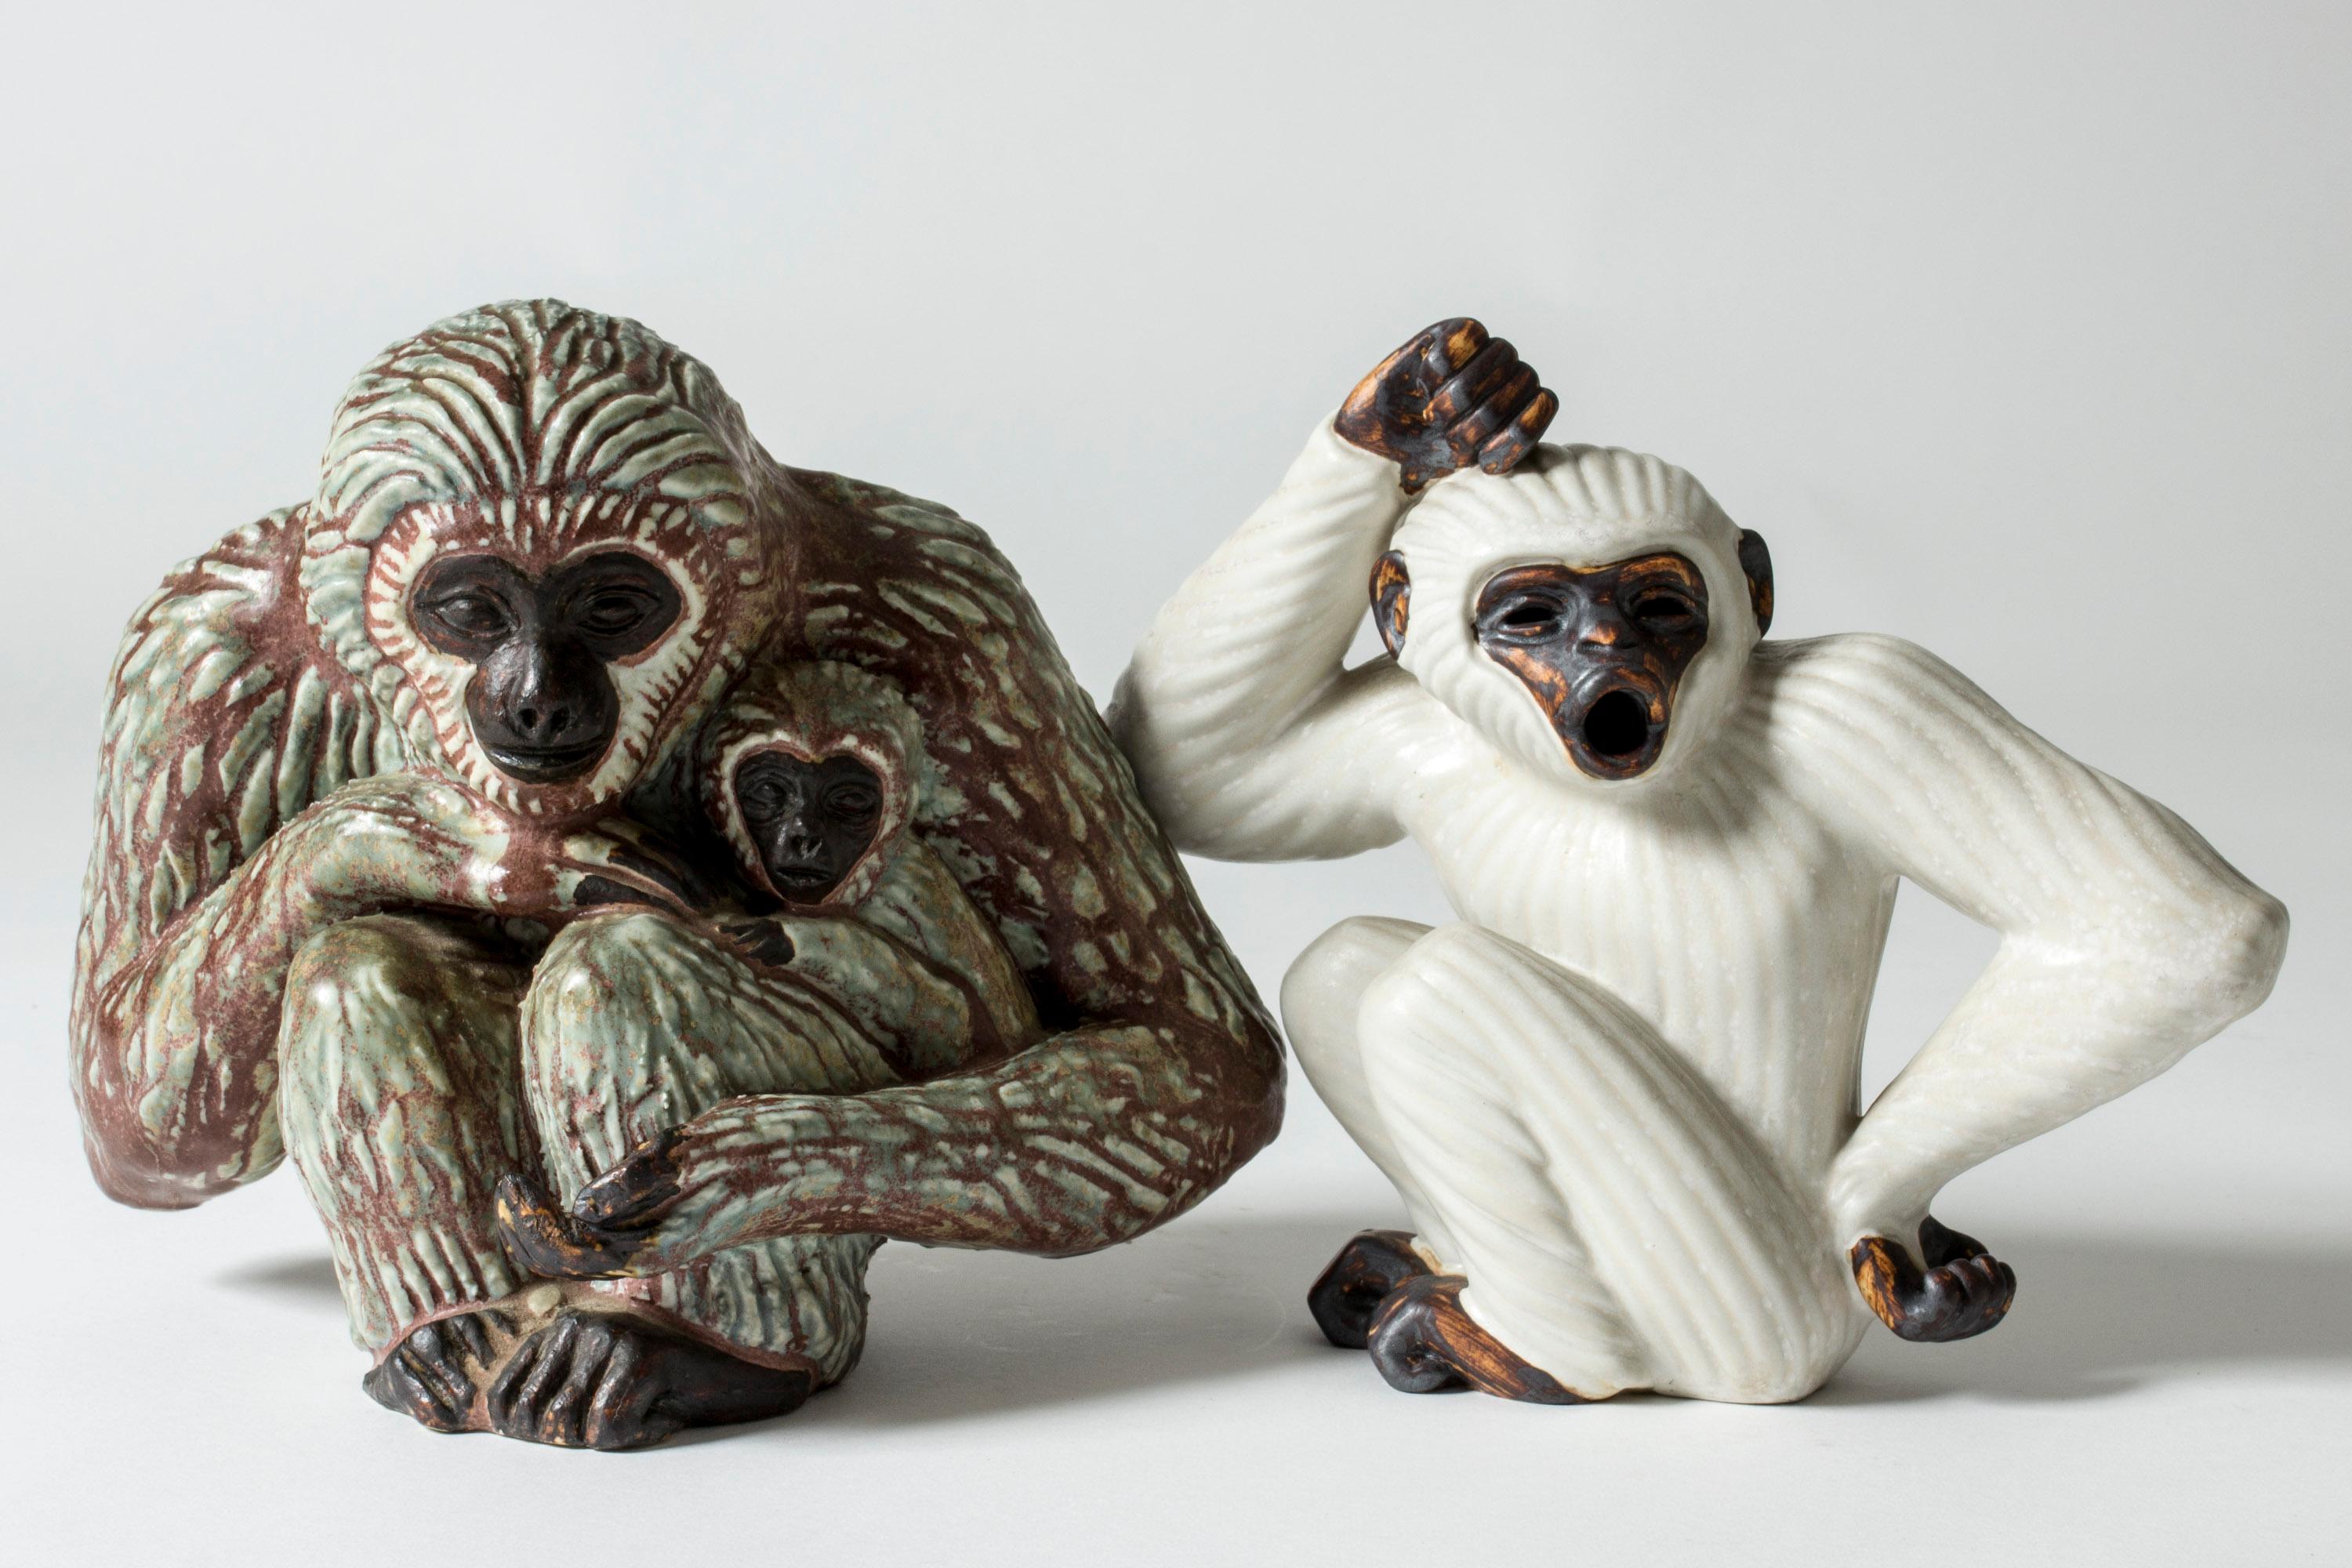 Scandinavian Midcentury Monkey Figurine by Gunnar Nylund for Rörstrand, Sweden 1